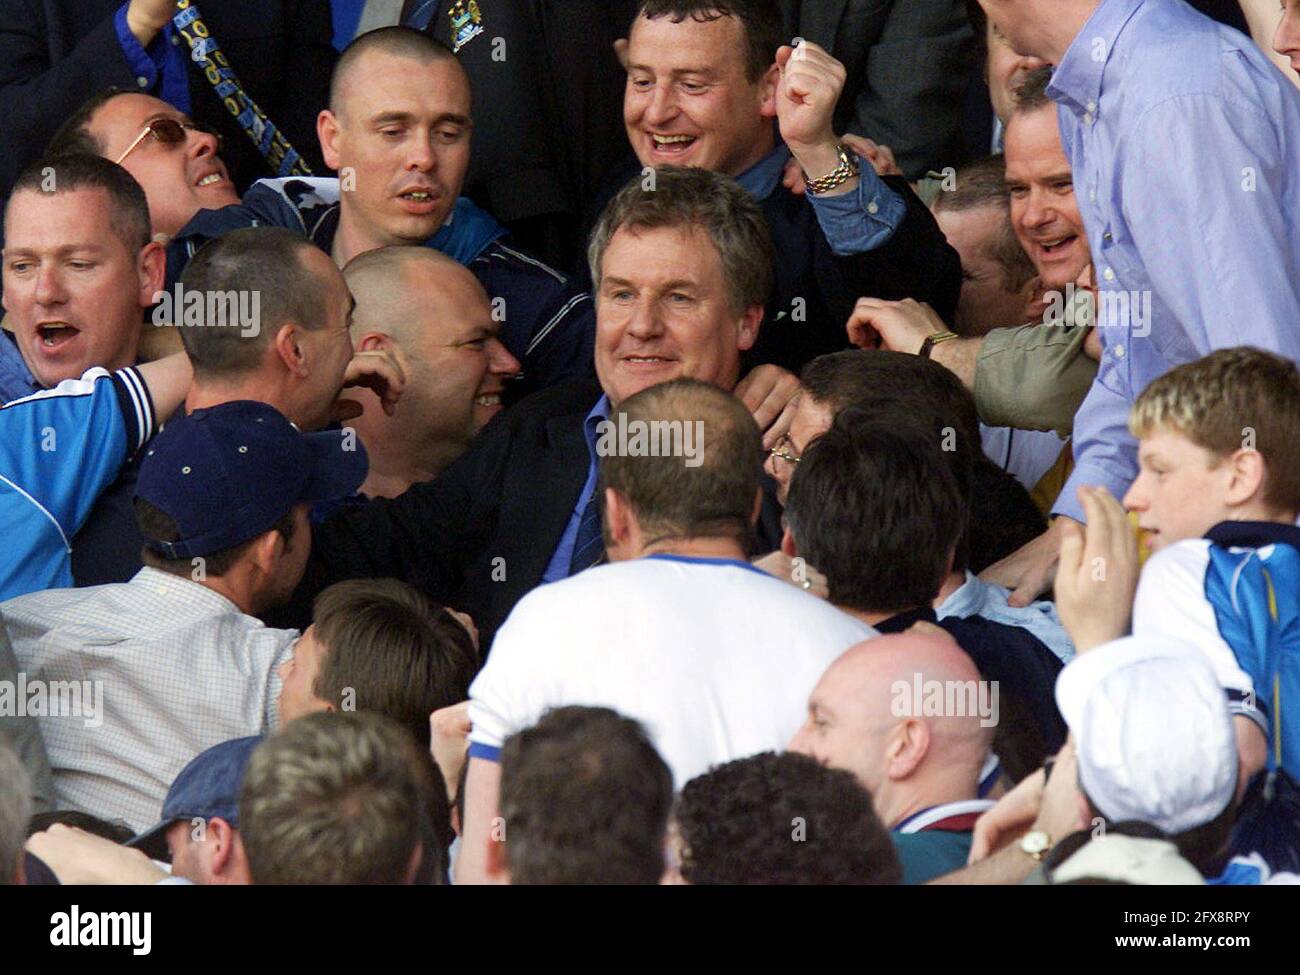 Foto del archivo fechada el 7-05-2000 del gerente de Manchester City Joe Royle es felicitada por los fans de la ciudad, después de su lado clined promoción a la Premiership durante el partido de Nationwide Division One contra Blackburn. Fecha de emisión: Miércoles 26 de mayo de 2021. Foto de stock